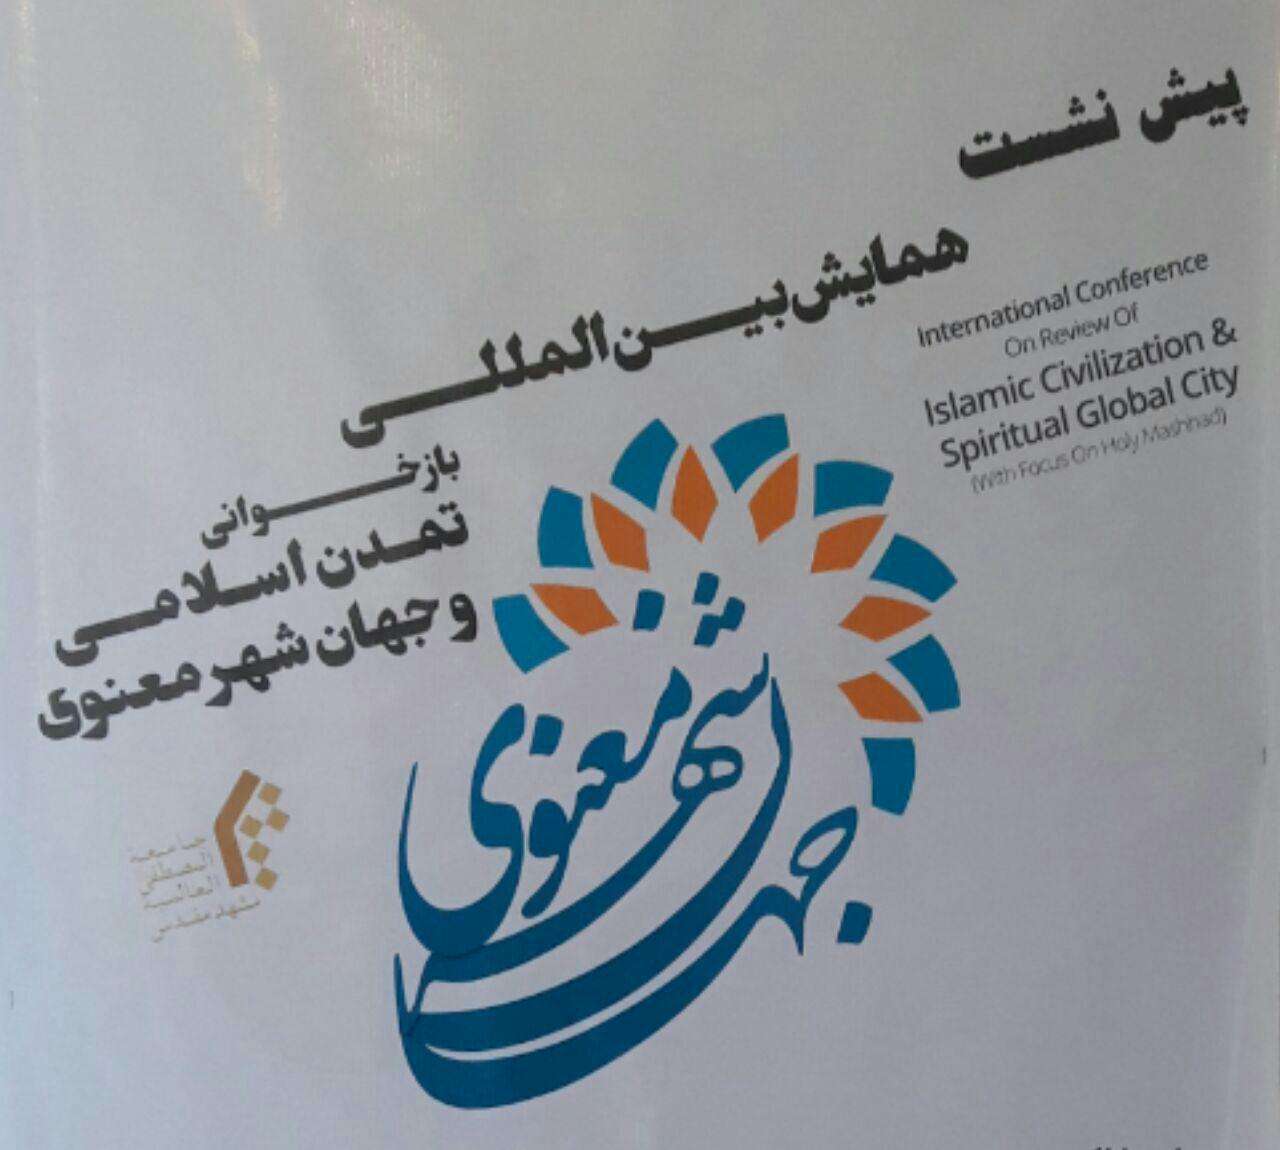 مشهد؛ میزبان همایش بین المللی «بازخوانی تمدن اسلامی و جهانشهر معنوی»